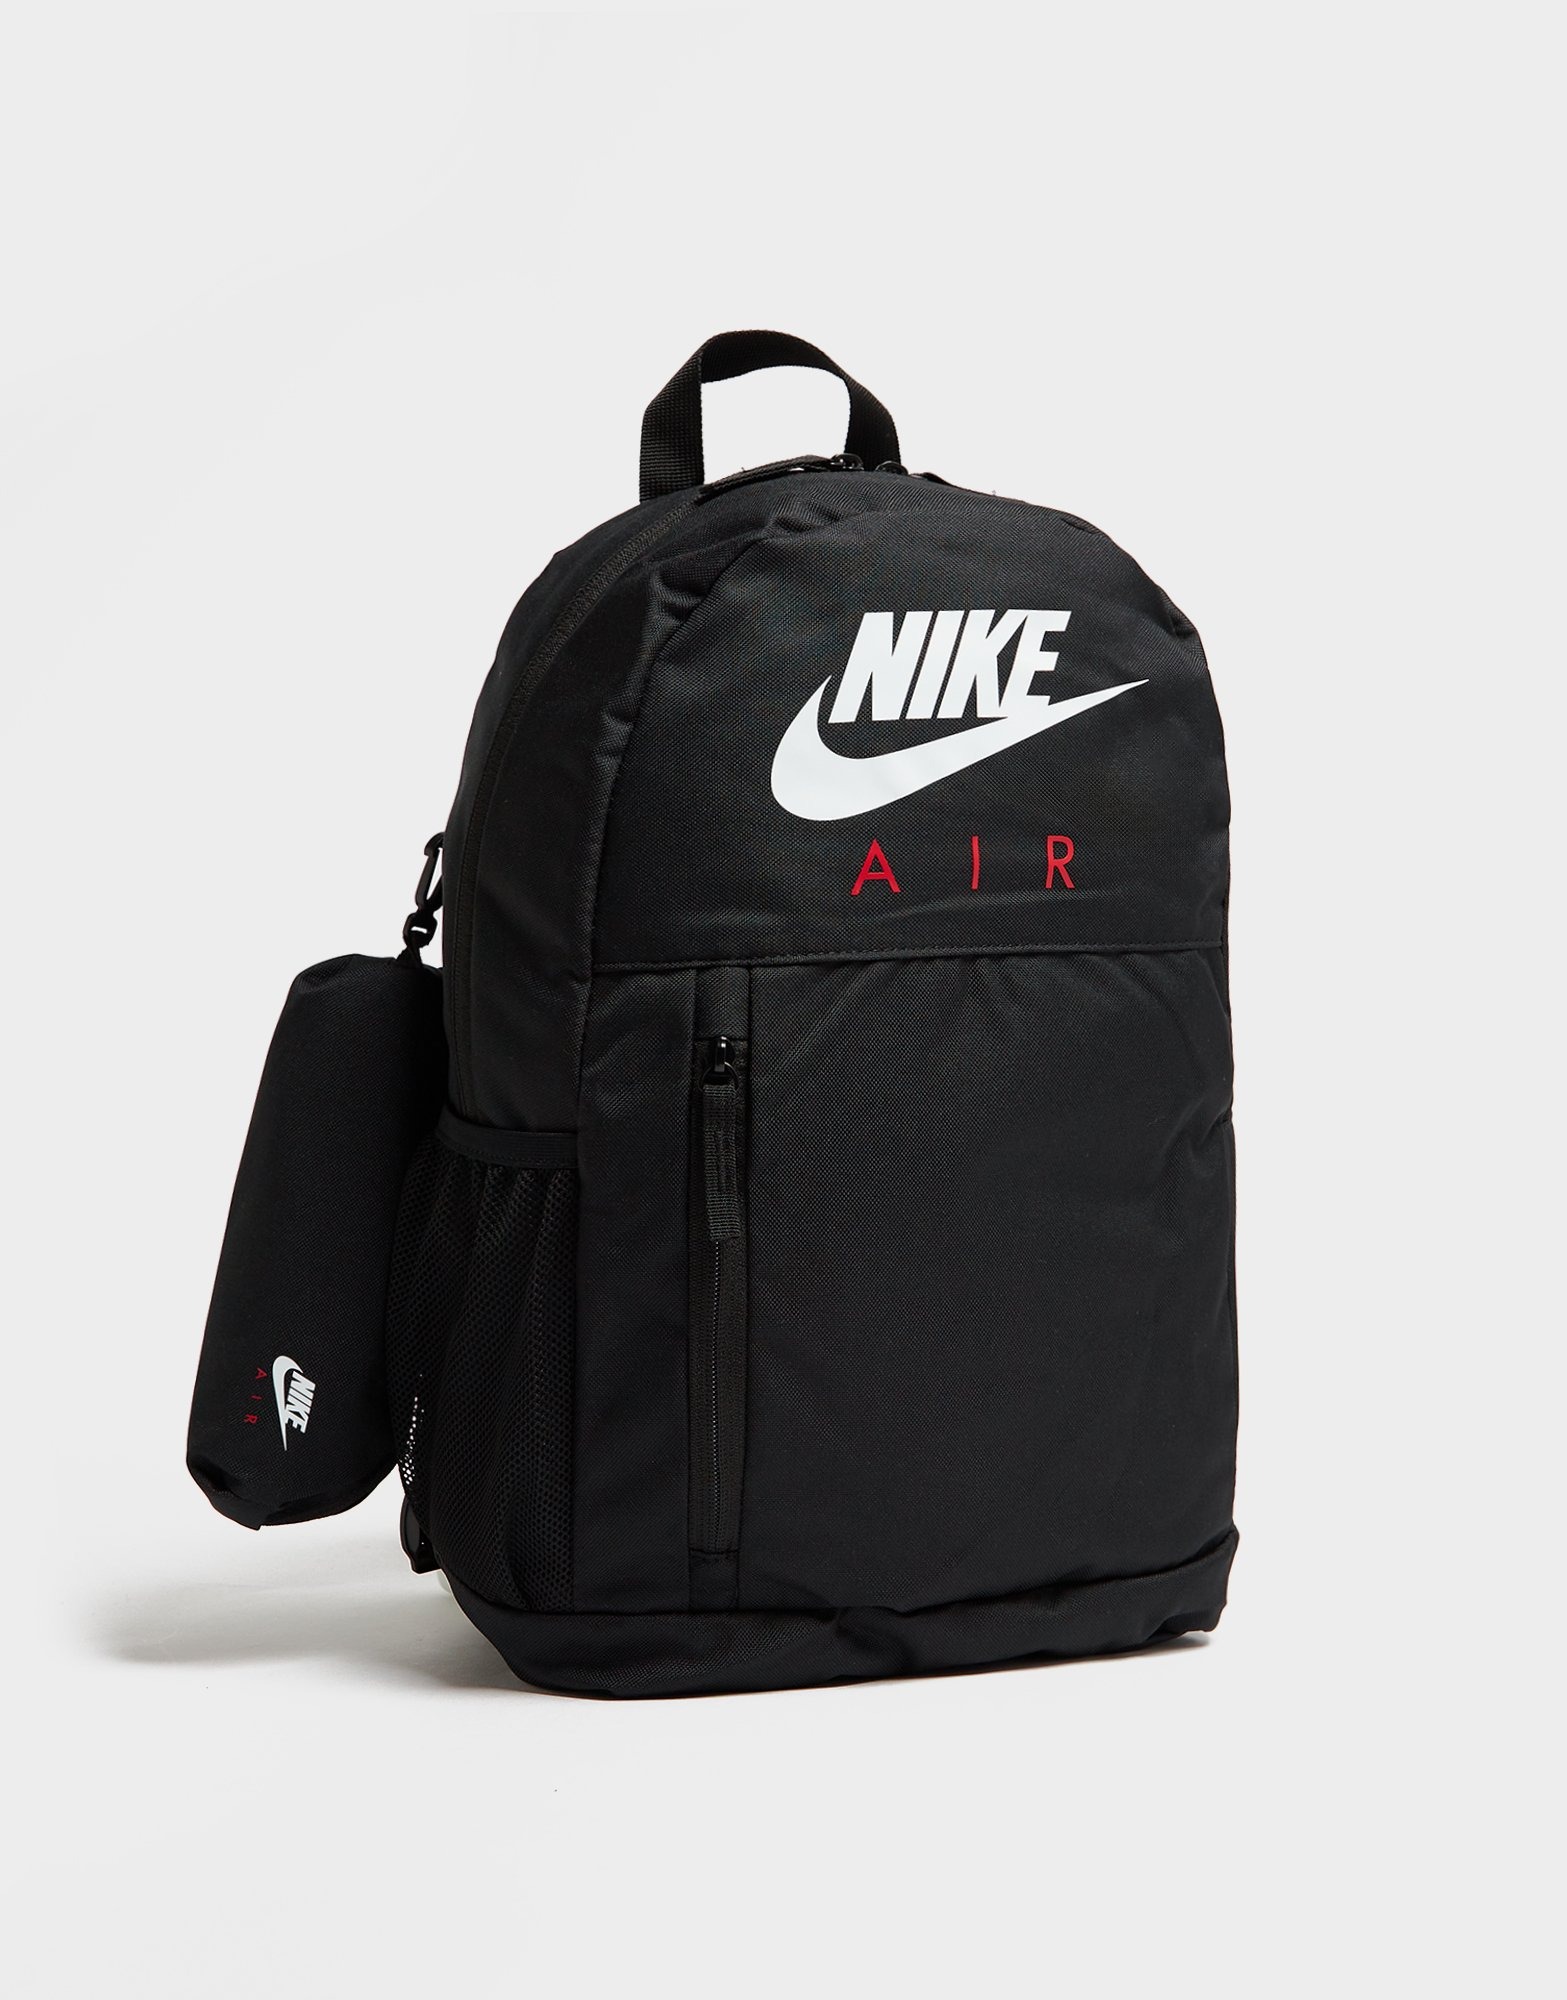 Odio cuscús Promesa Black Nike Elemental Backpack | JD Sports UK